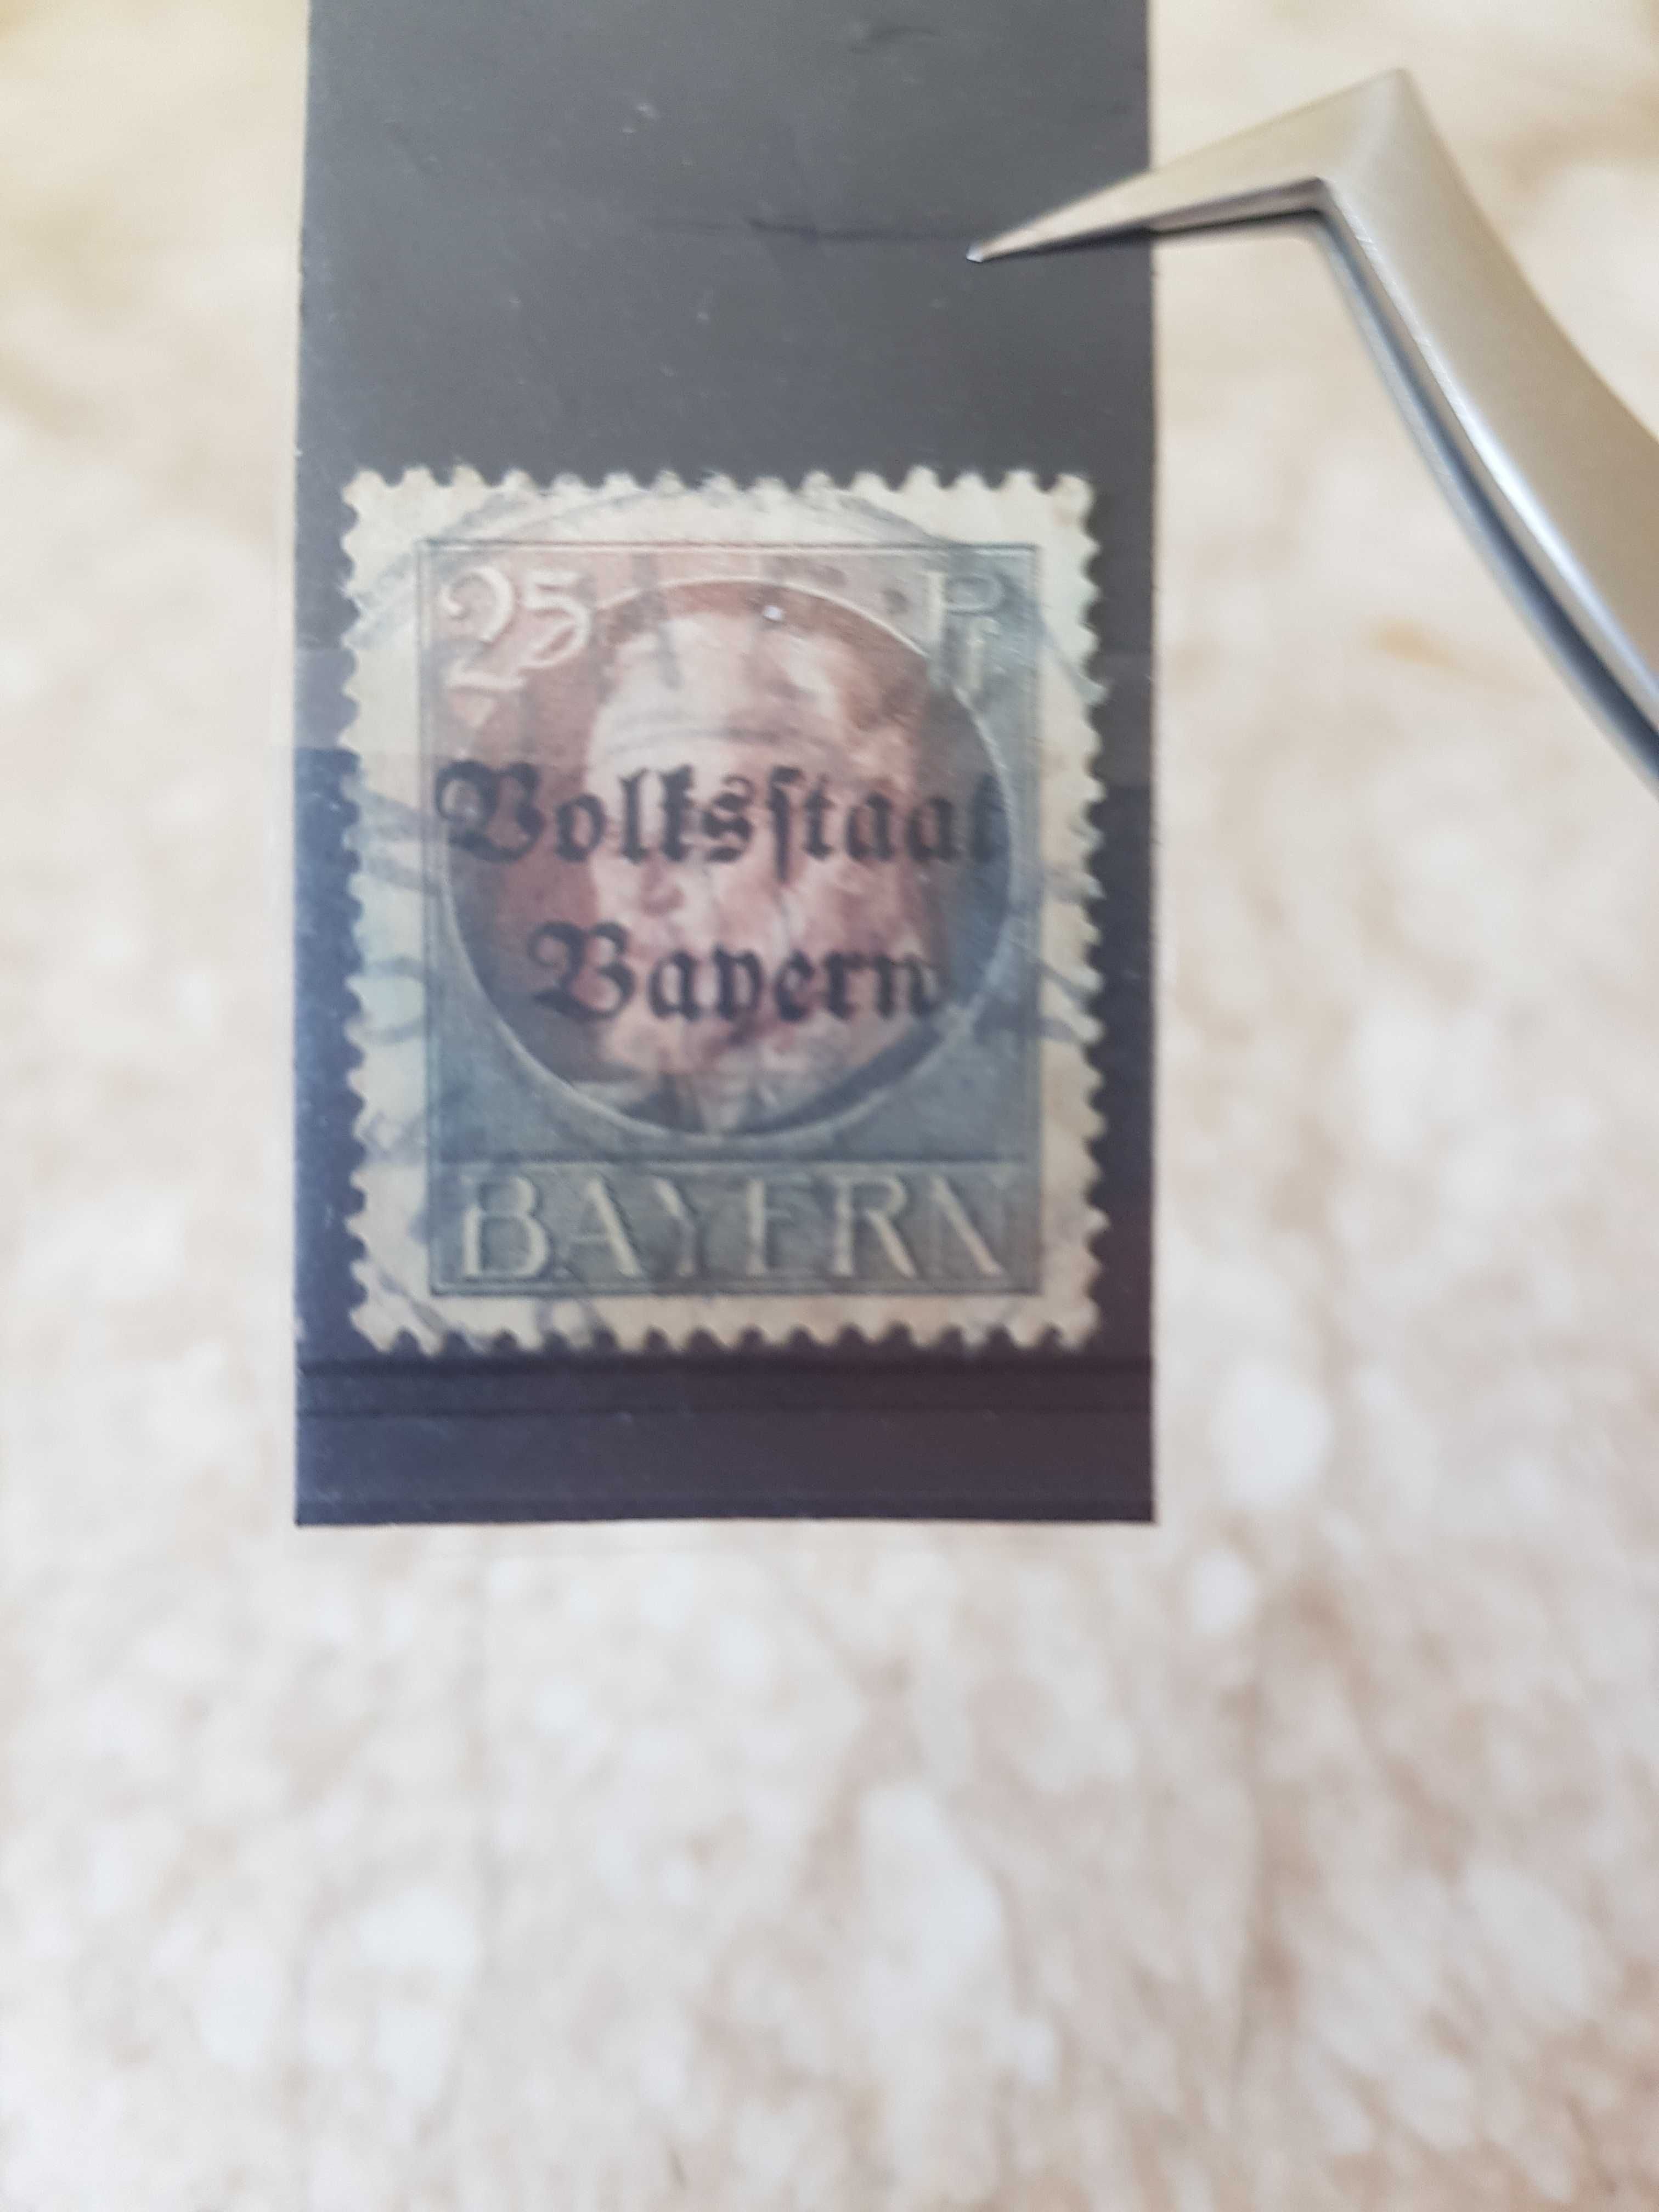 Vând sau schimb o colecție de timbre poştale vechi cu EROARE mare.